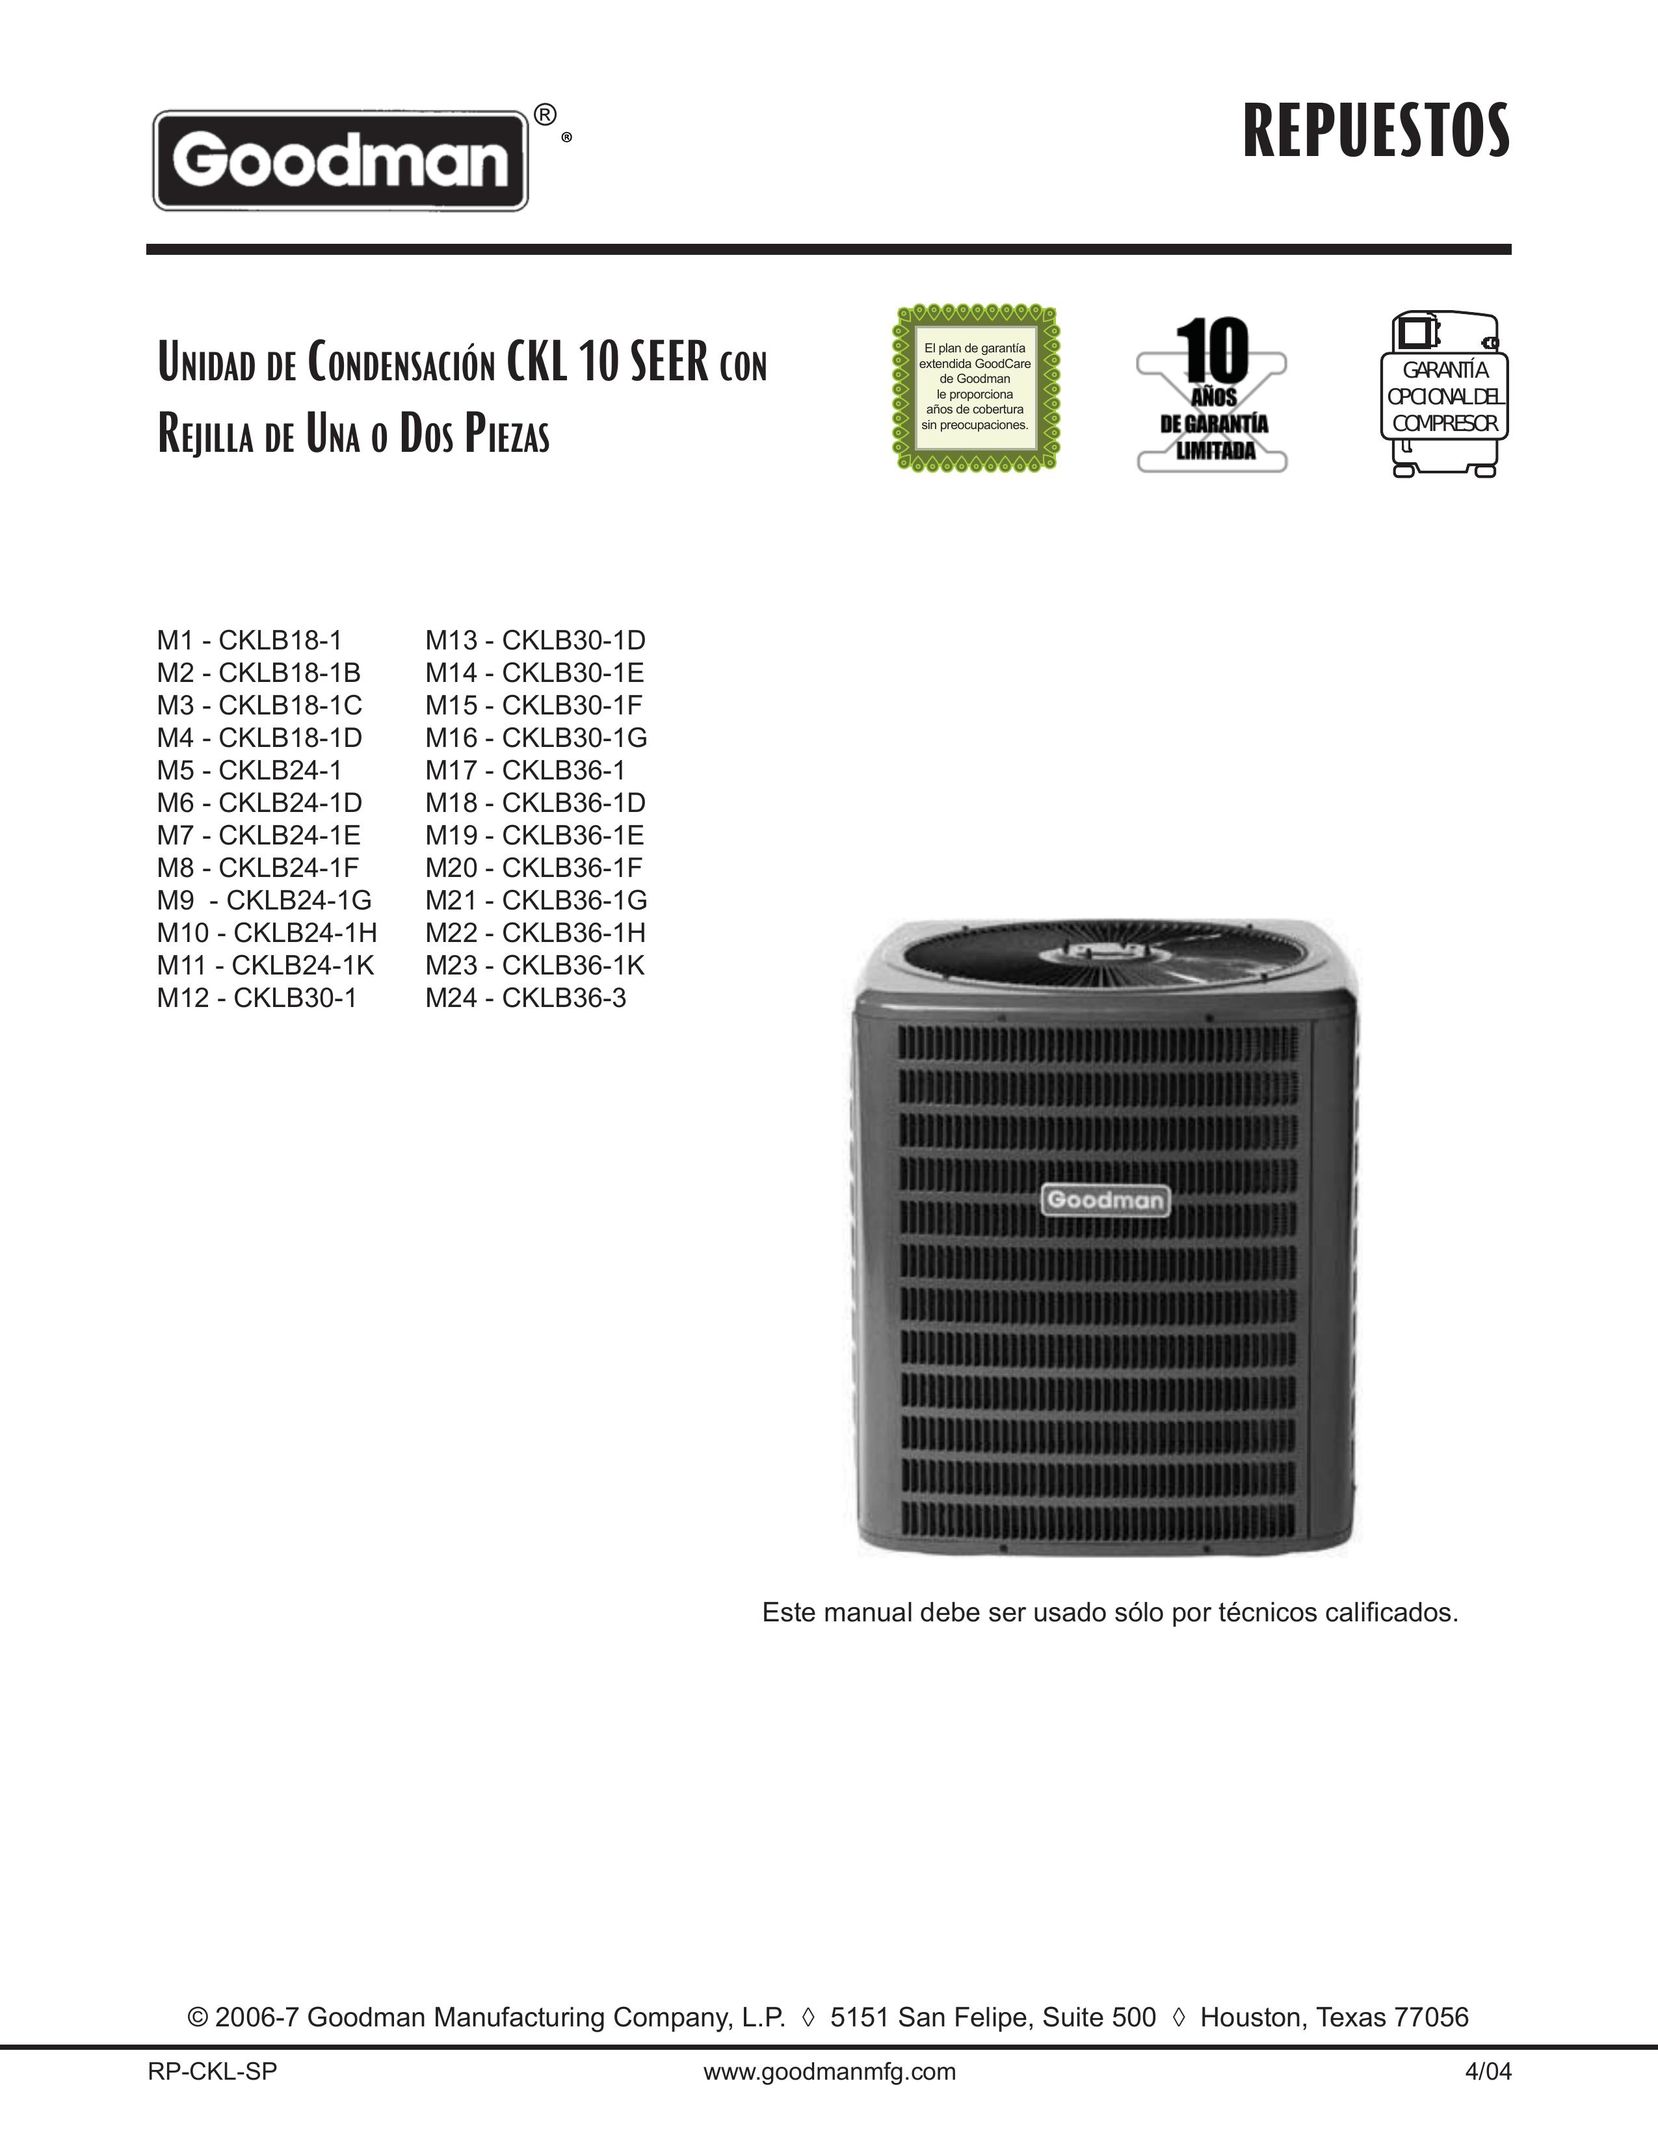 Goodman Mfg CKLB24-1F Air Conditioner User Manual